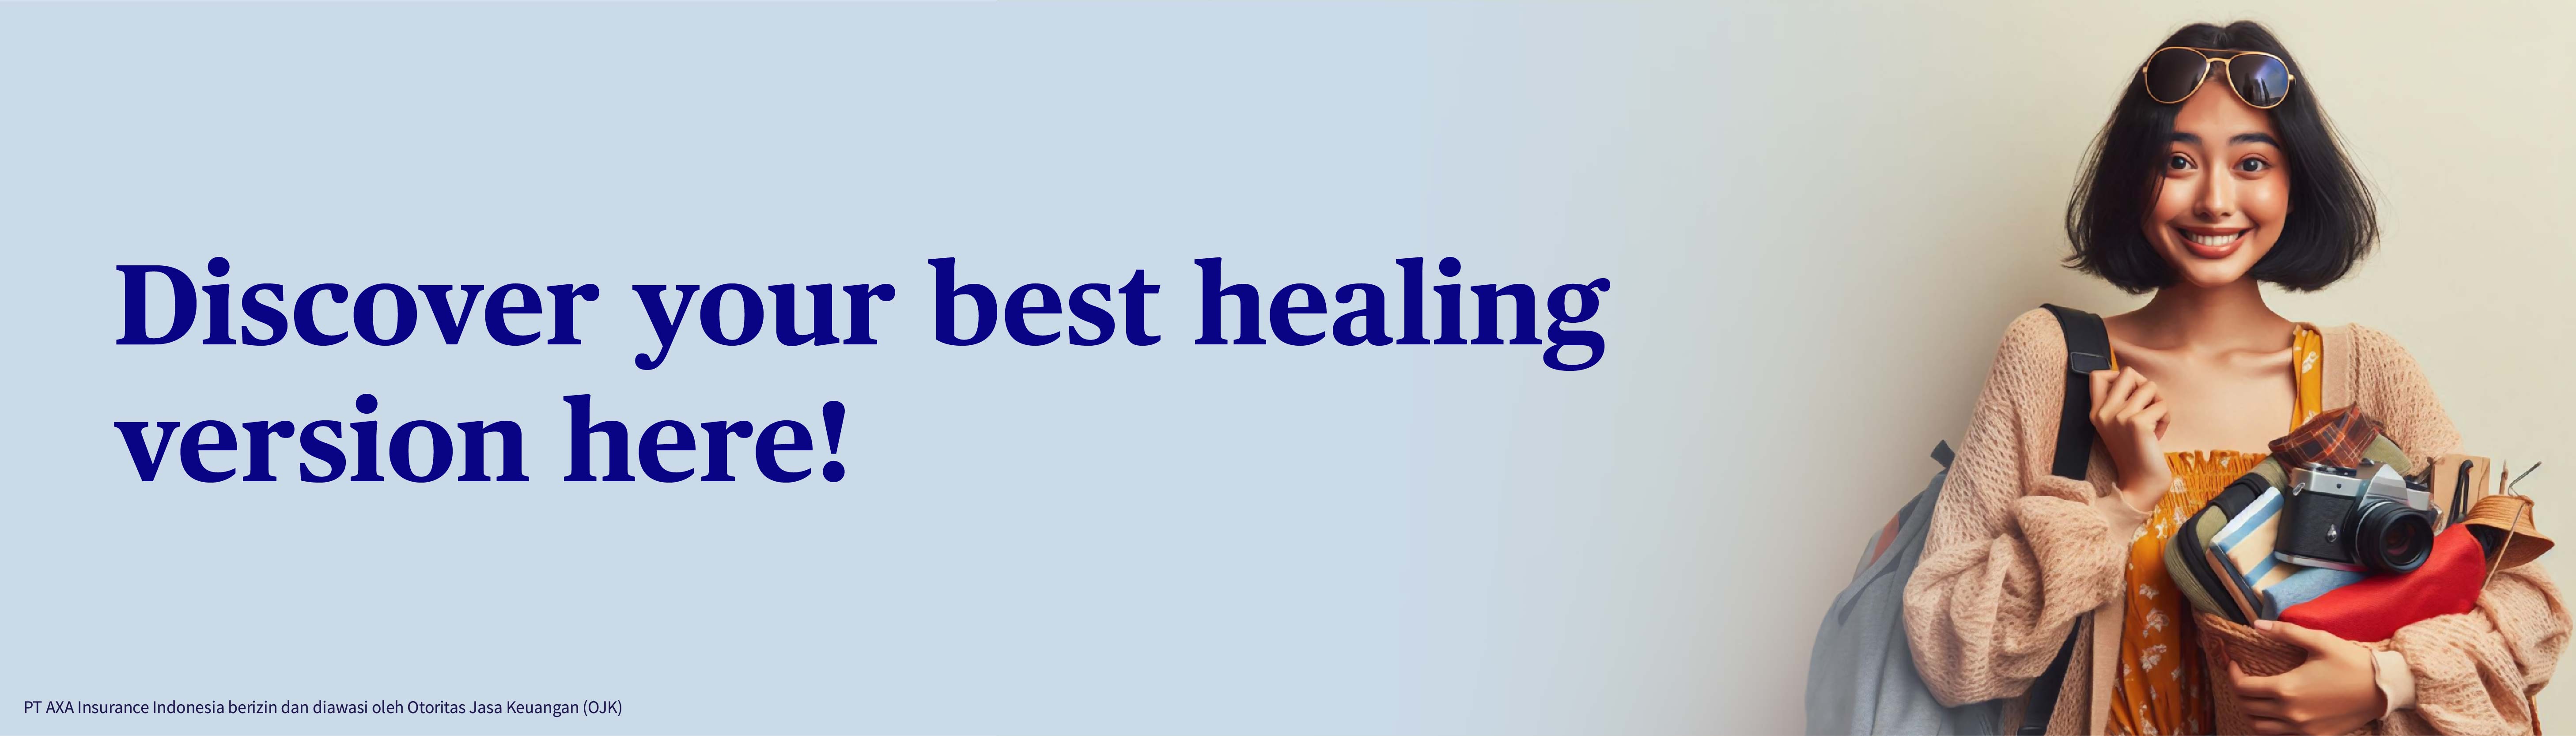 banner-dari-8-alternatif-ini-mana-healing-terbaik-versimu